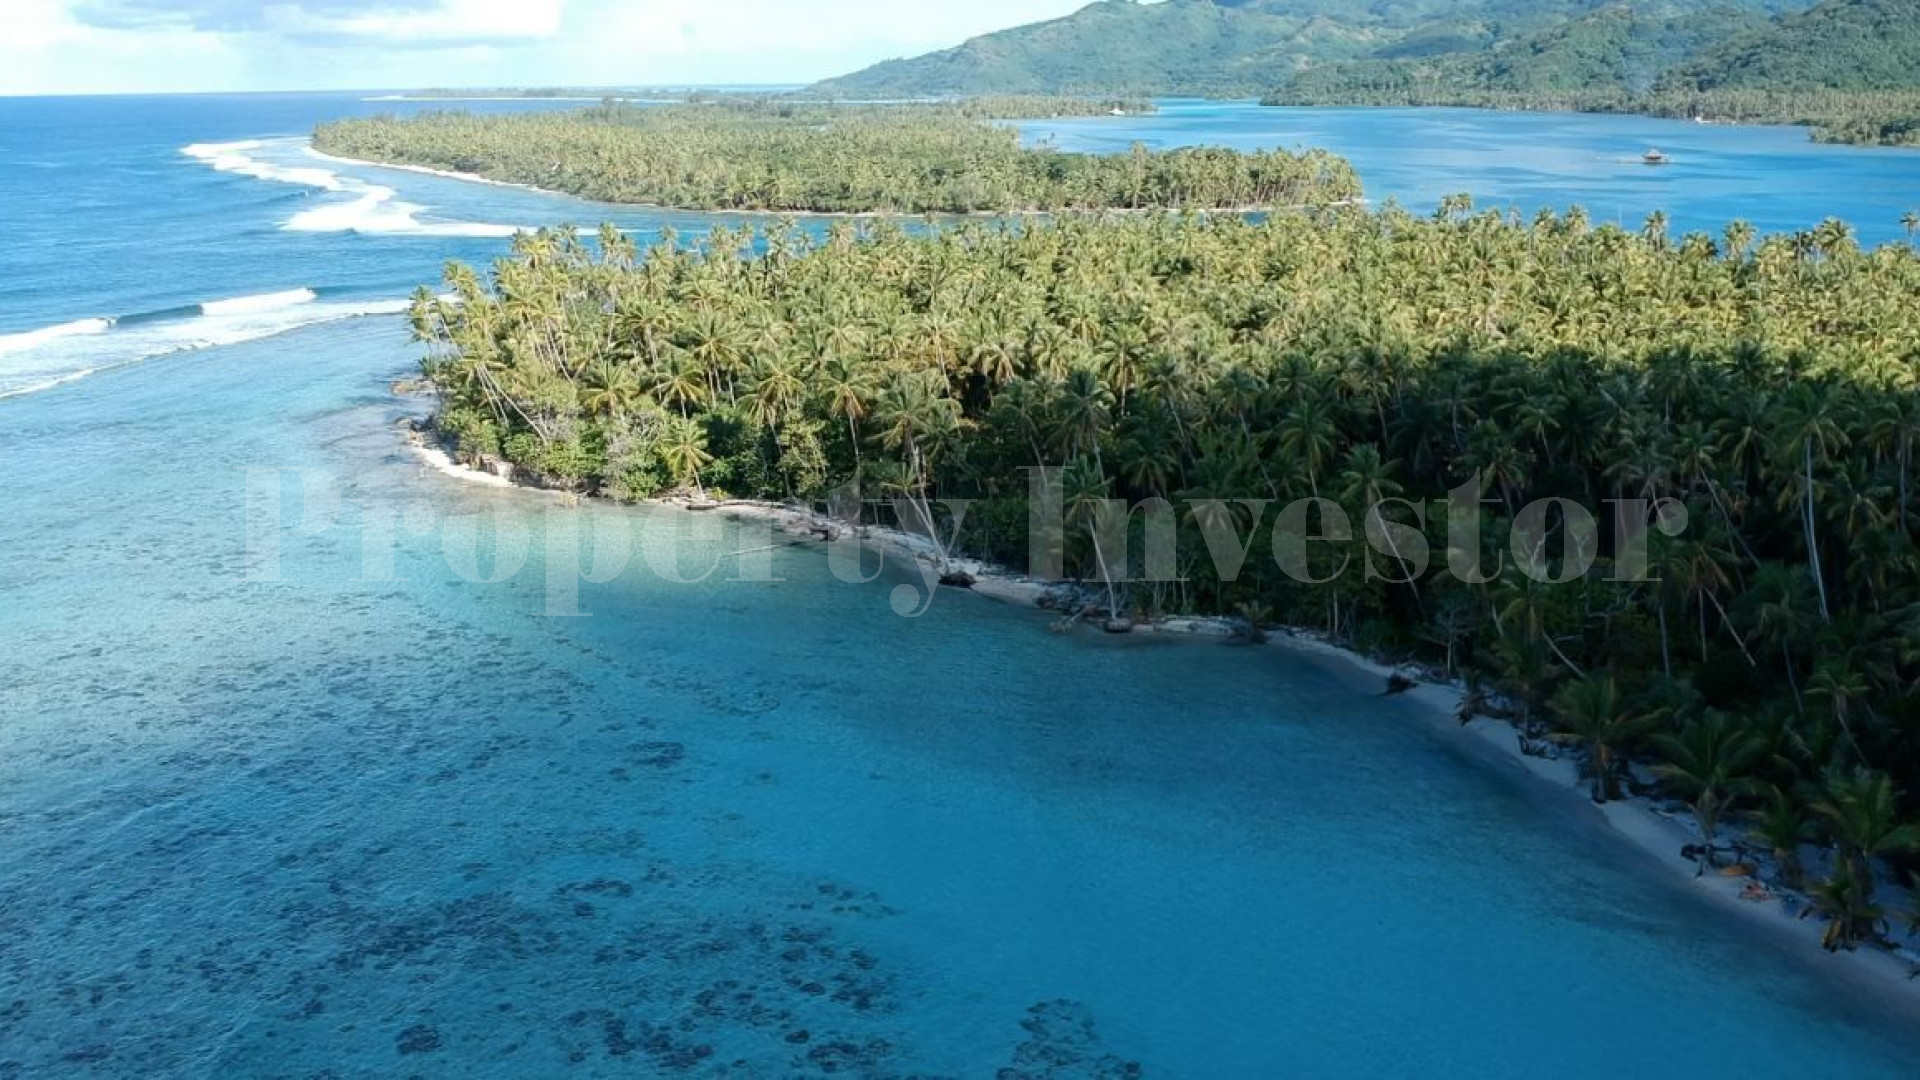 Продается частный остров 16,6 га в идеальном месте для развития в Хуахине, Французская Полинезия